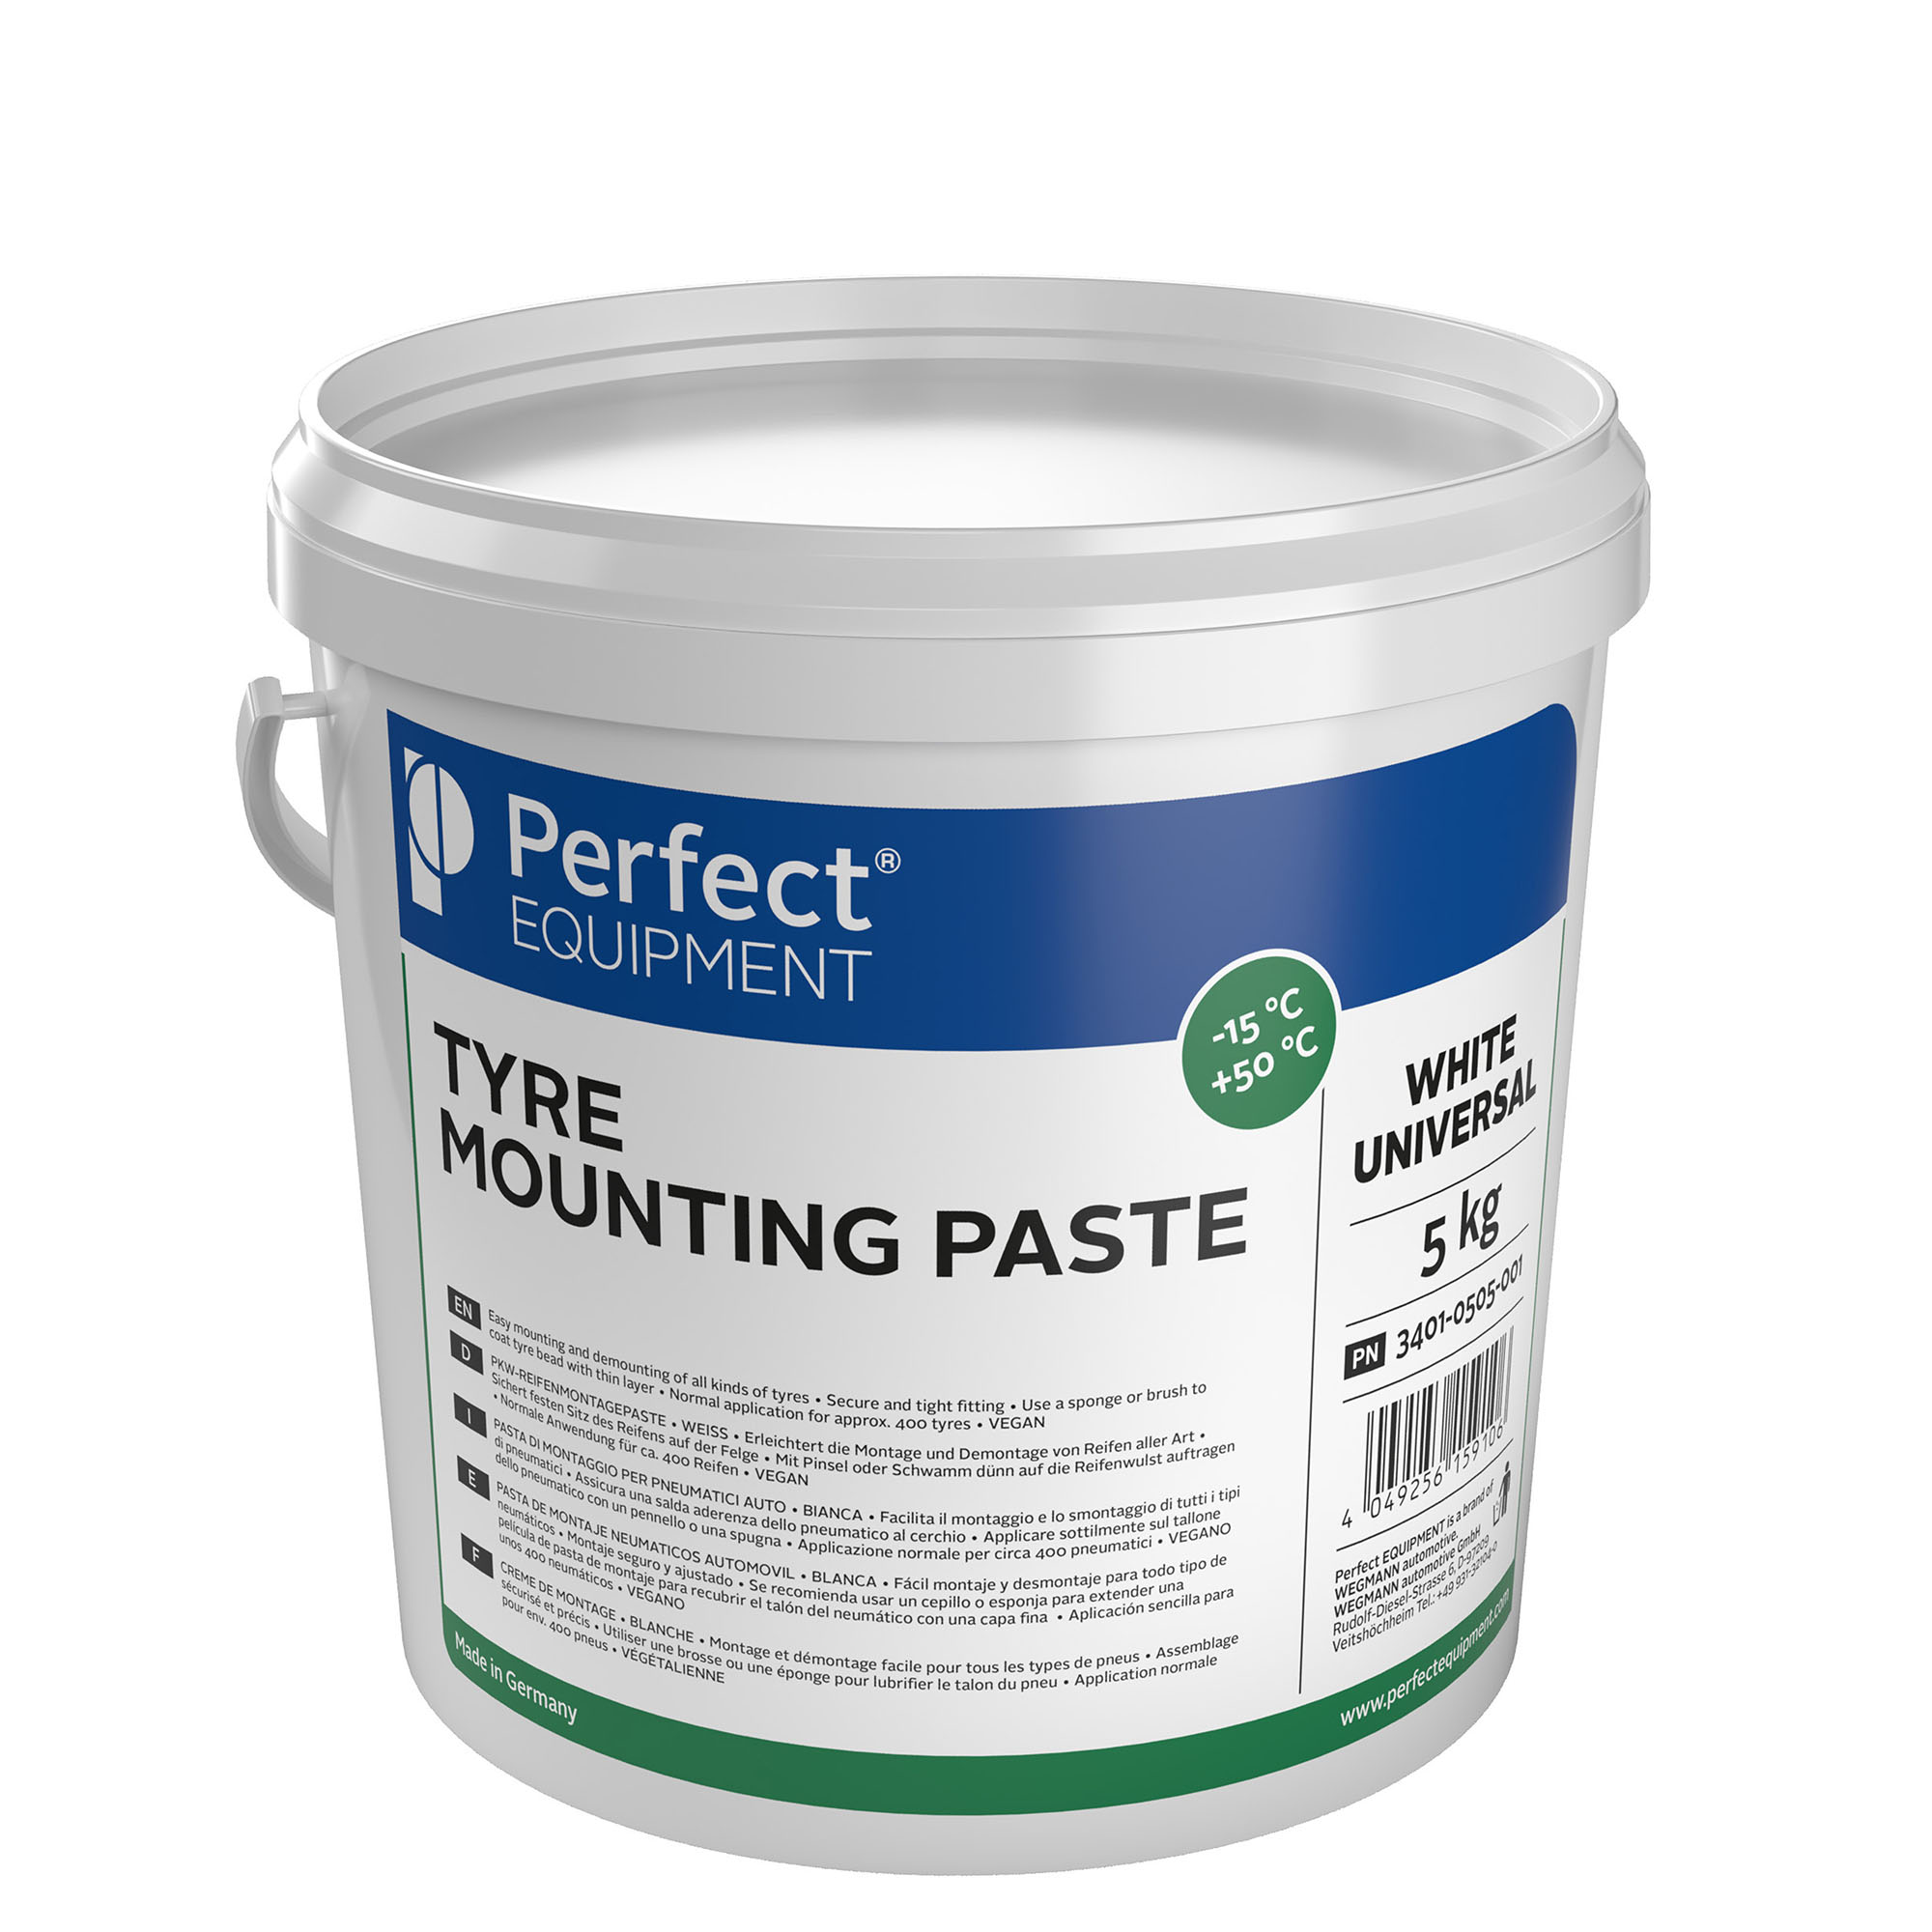 Mounting paste - white, universal, 5kg